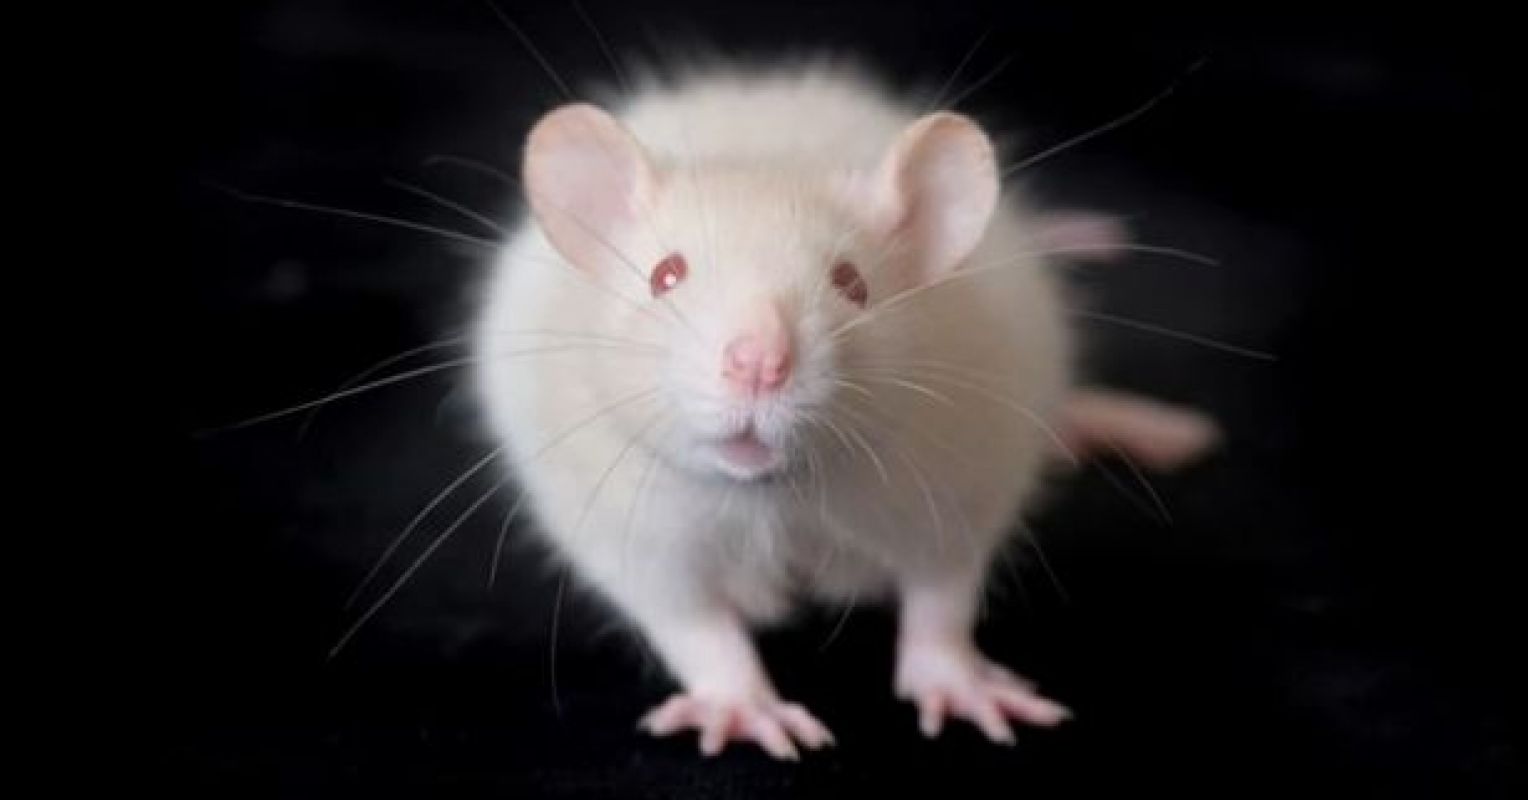 La vie émotionnelle des rats : les rats lisent la douleur sur le visage des autres | La psychologie aujourd'hui